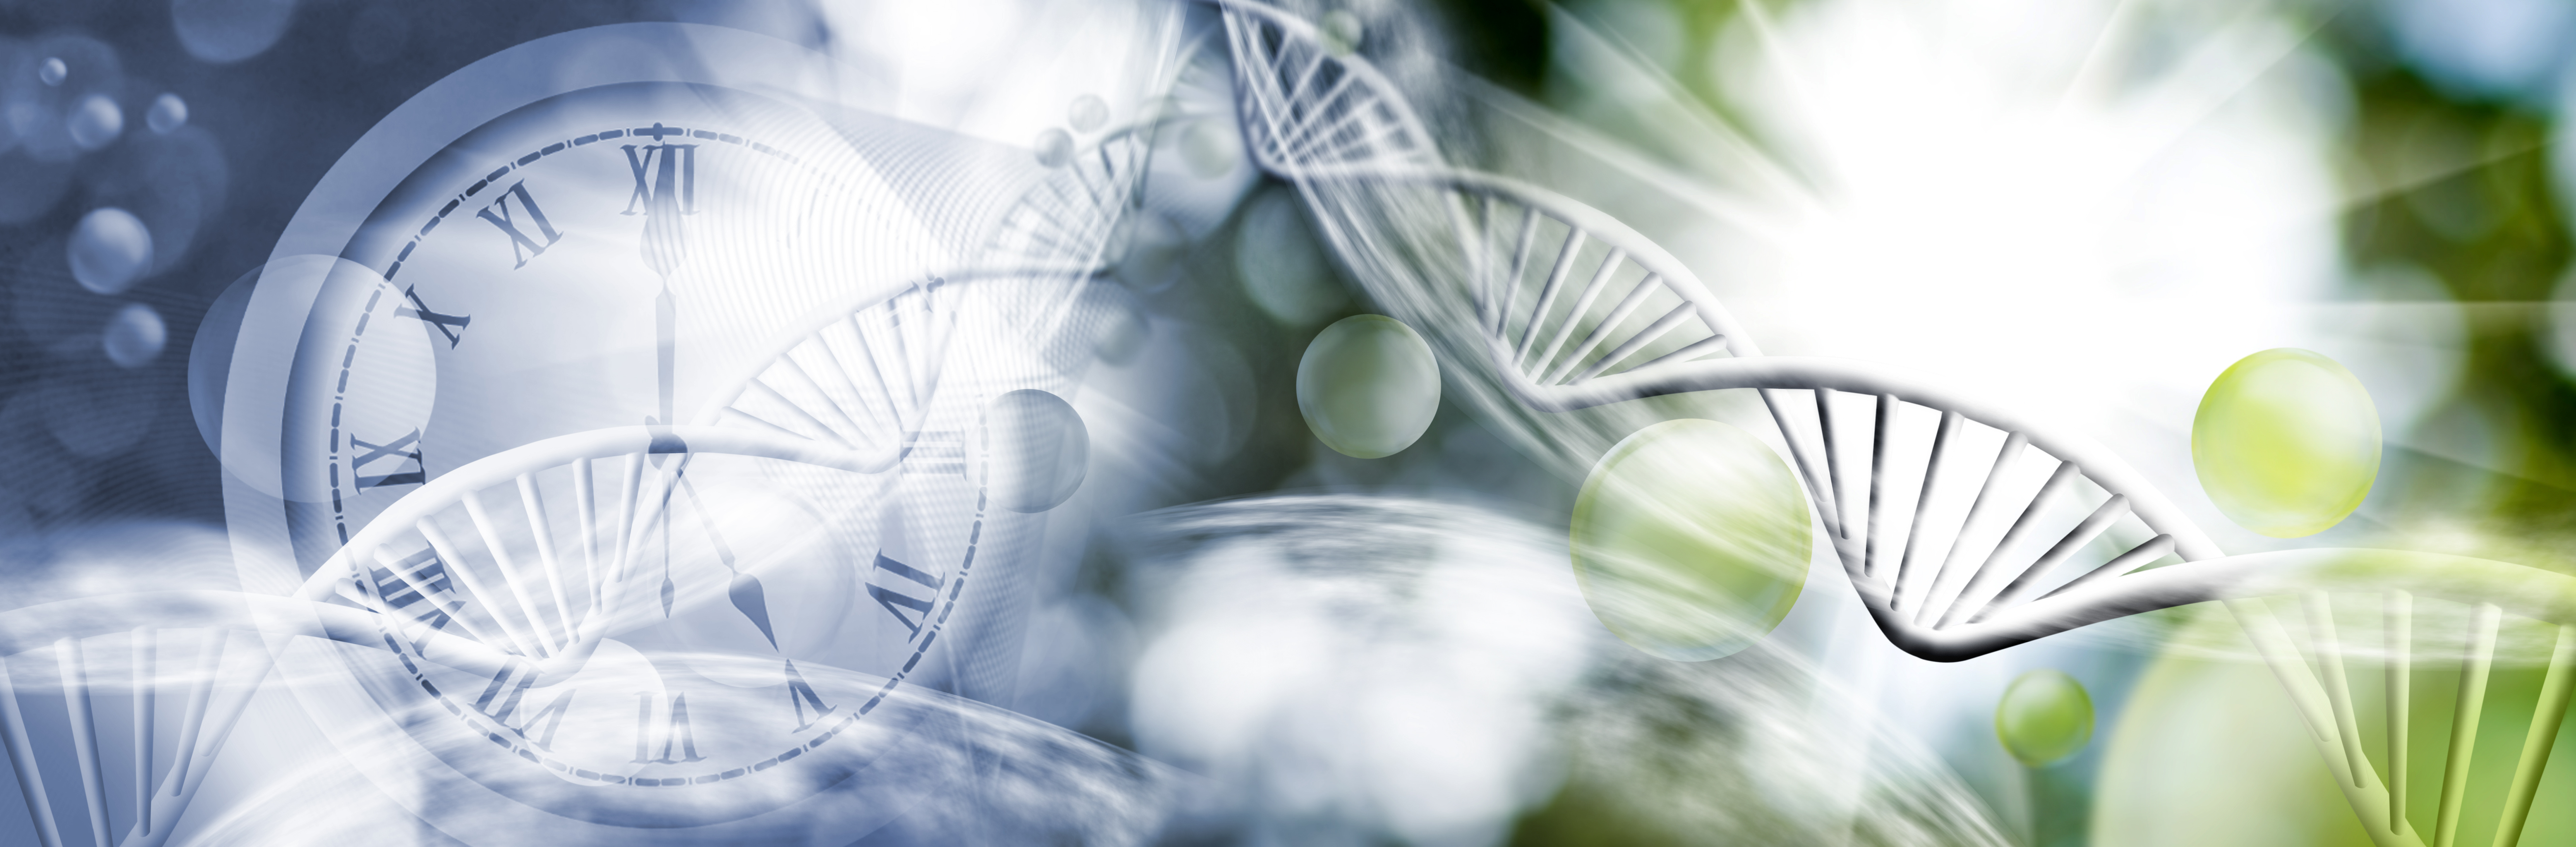 Les effets de la sélection naturelle sur le génome humain peuvent être retracés jusqu'au Paléolithique. © cooperr, Adobe Stock